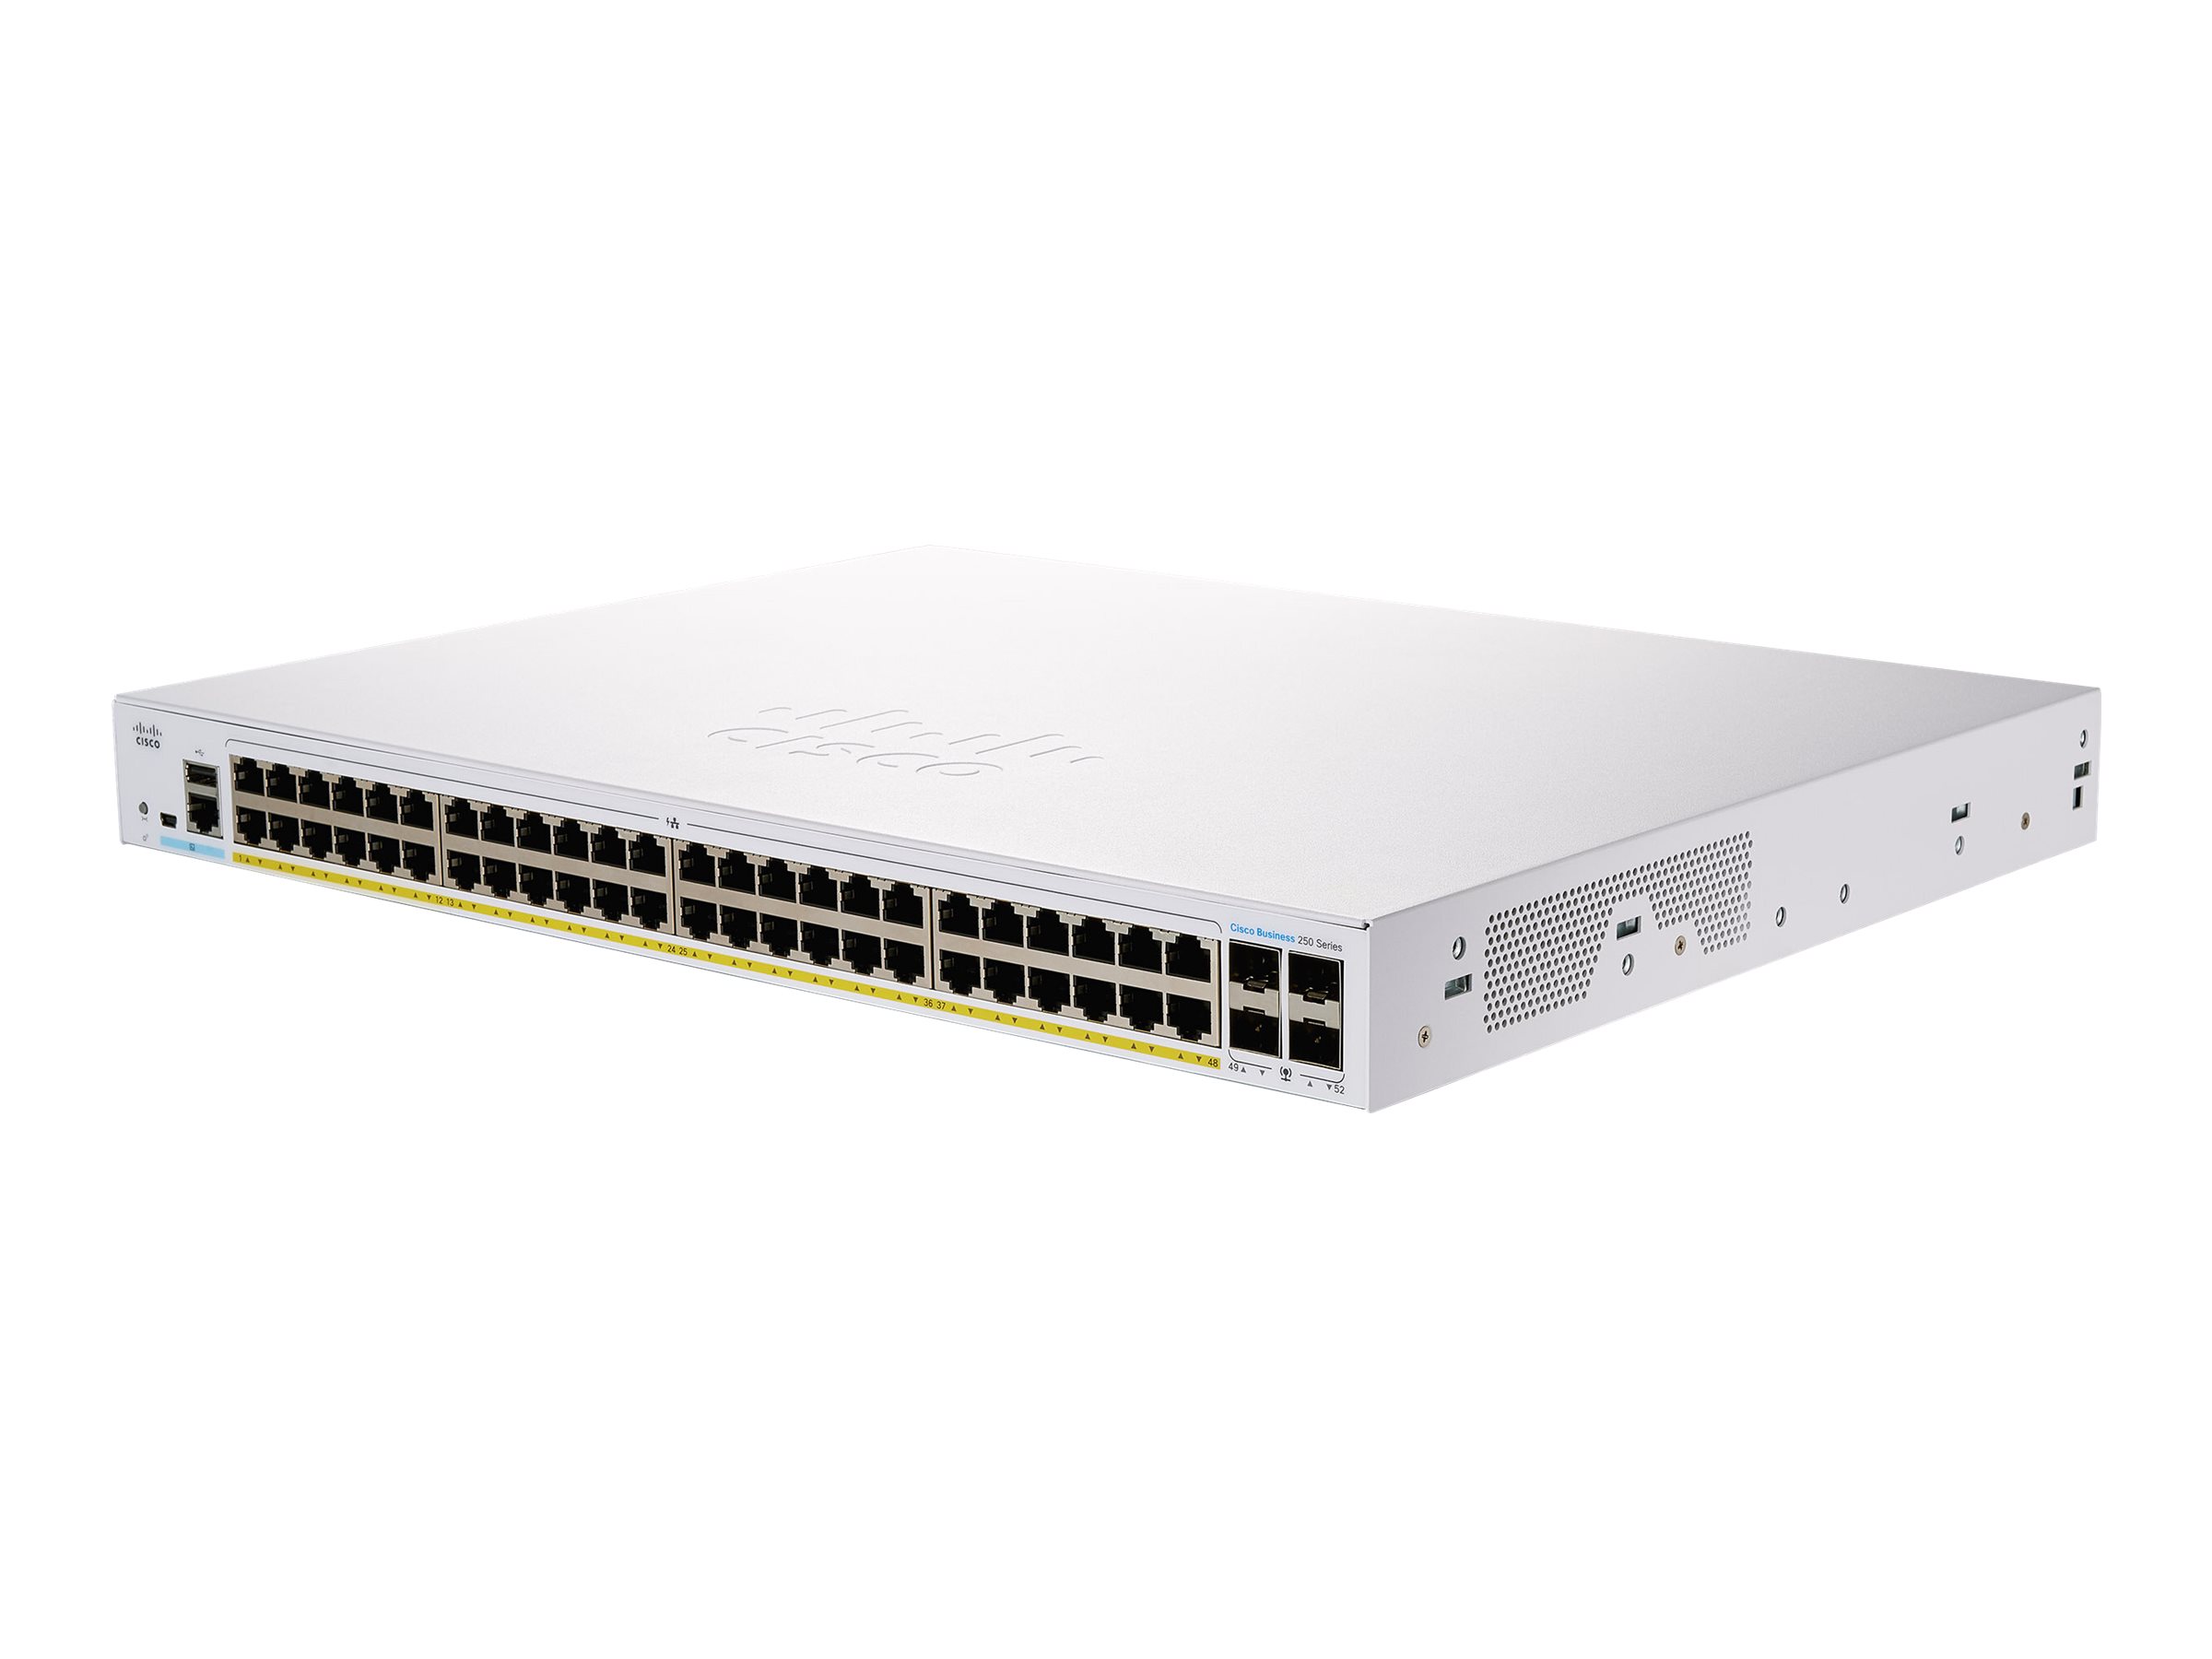 Cisco Business 250 Series 250-48PP-4G (CBS250-48PP-4G-EU)